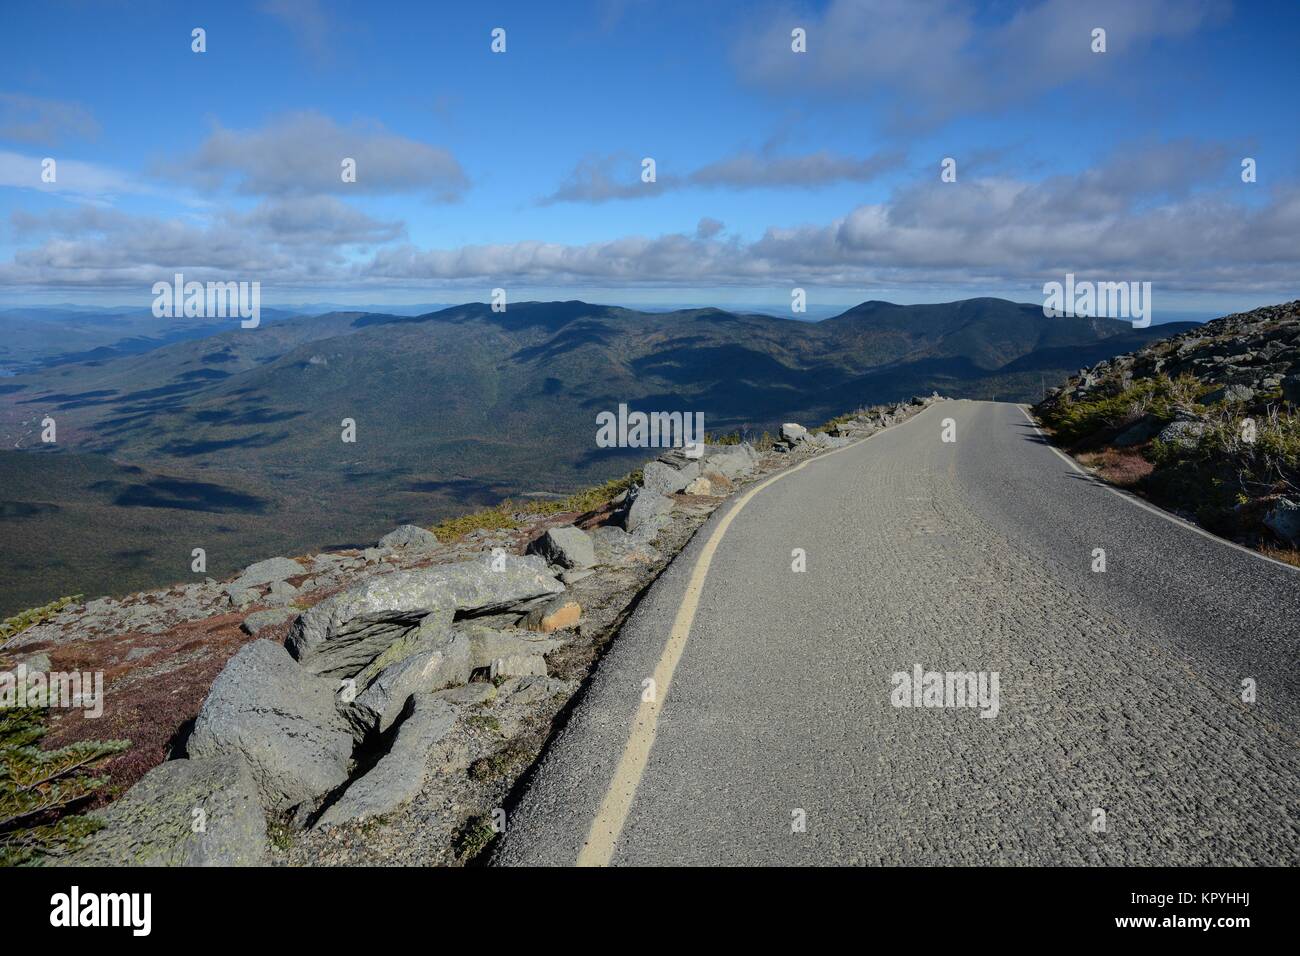 Landschaft Blick über die Berge und Hügel von Mount Washington Auto toll road Route an einem sonnigen Tag mit blauem Himmel und leichten Wolken Stockfoto